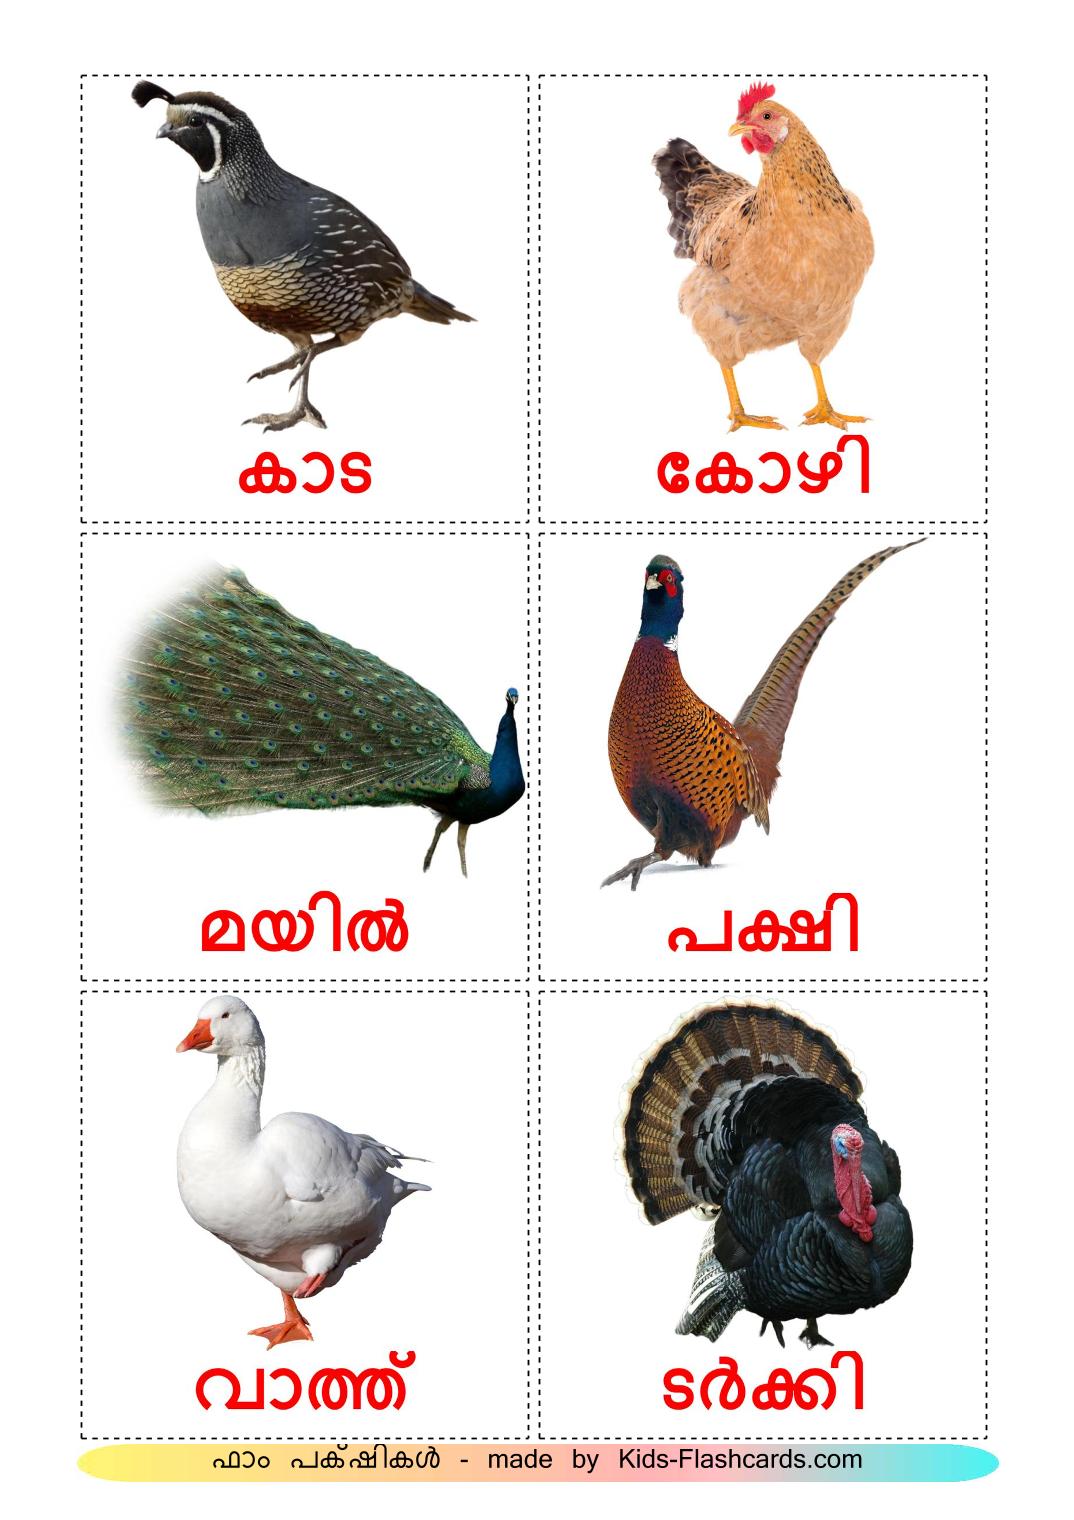 Aves da Quinta - 11 Flashcards malayalames gratuitos para impressão